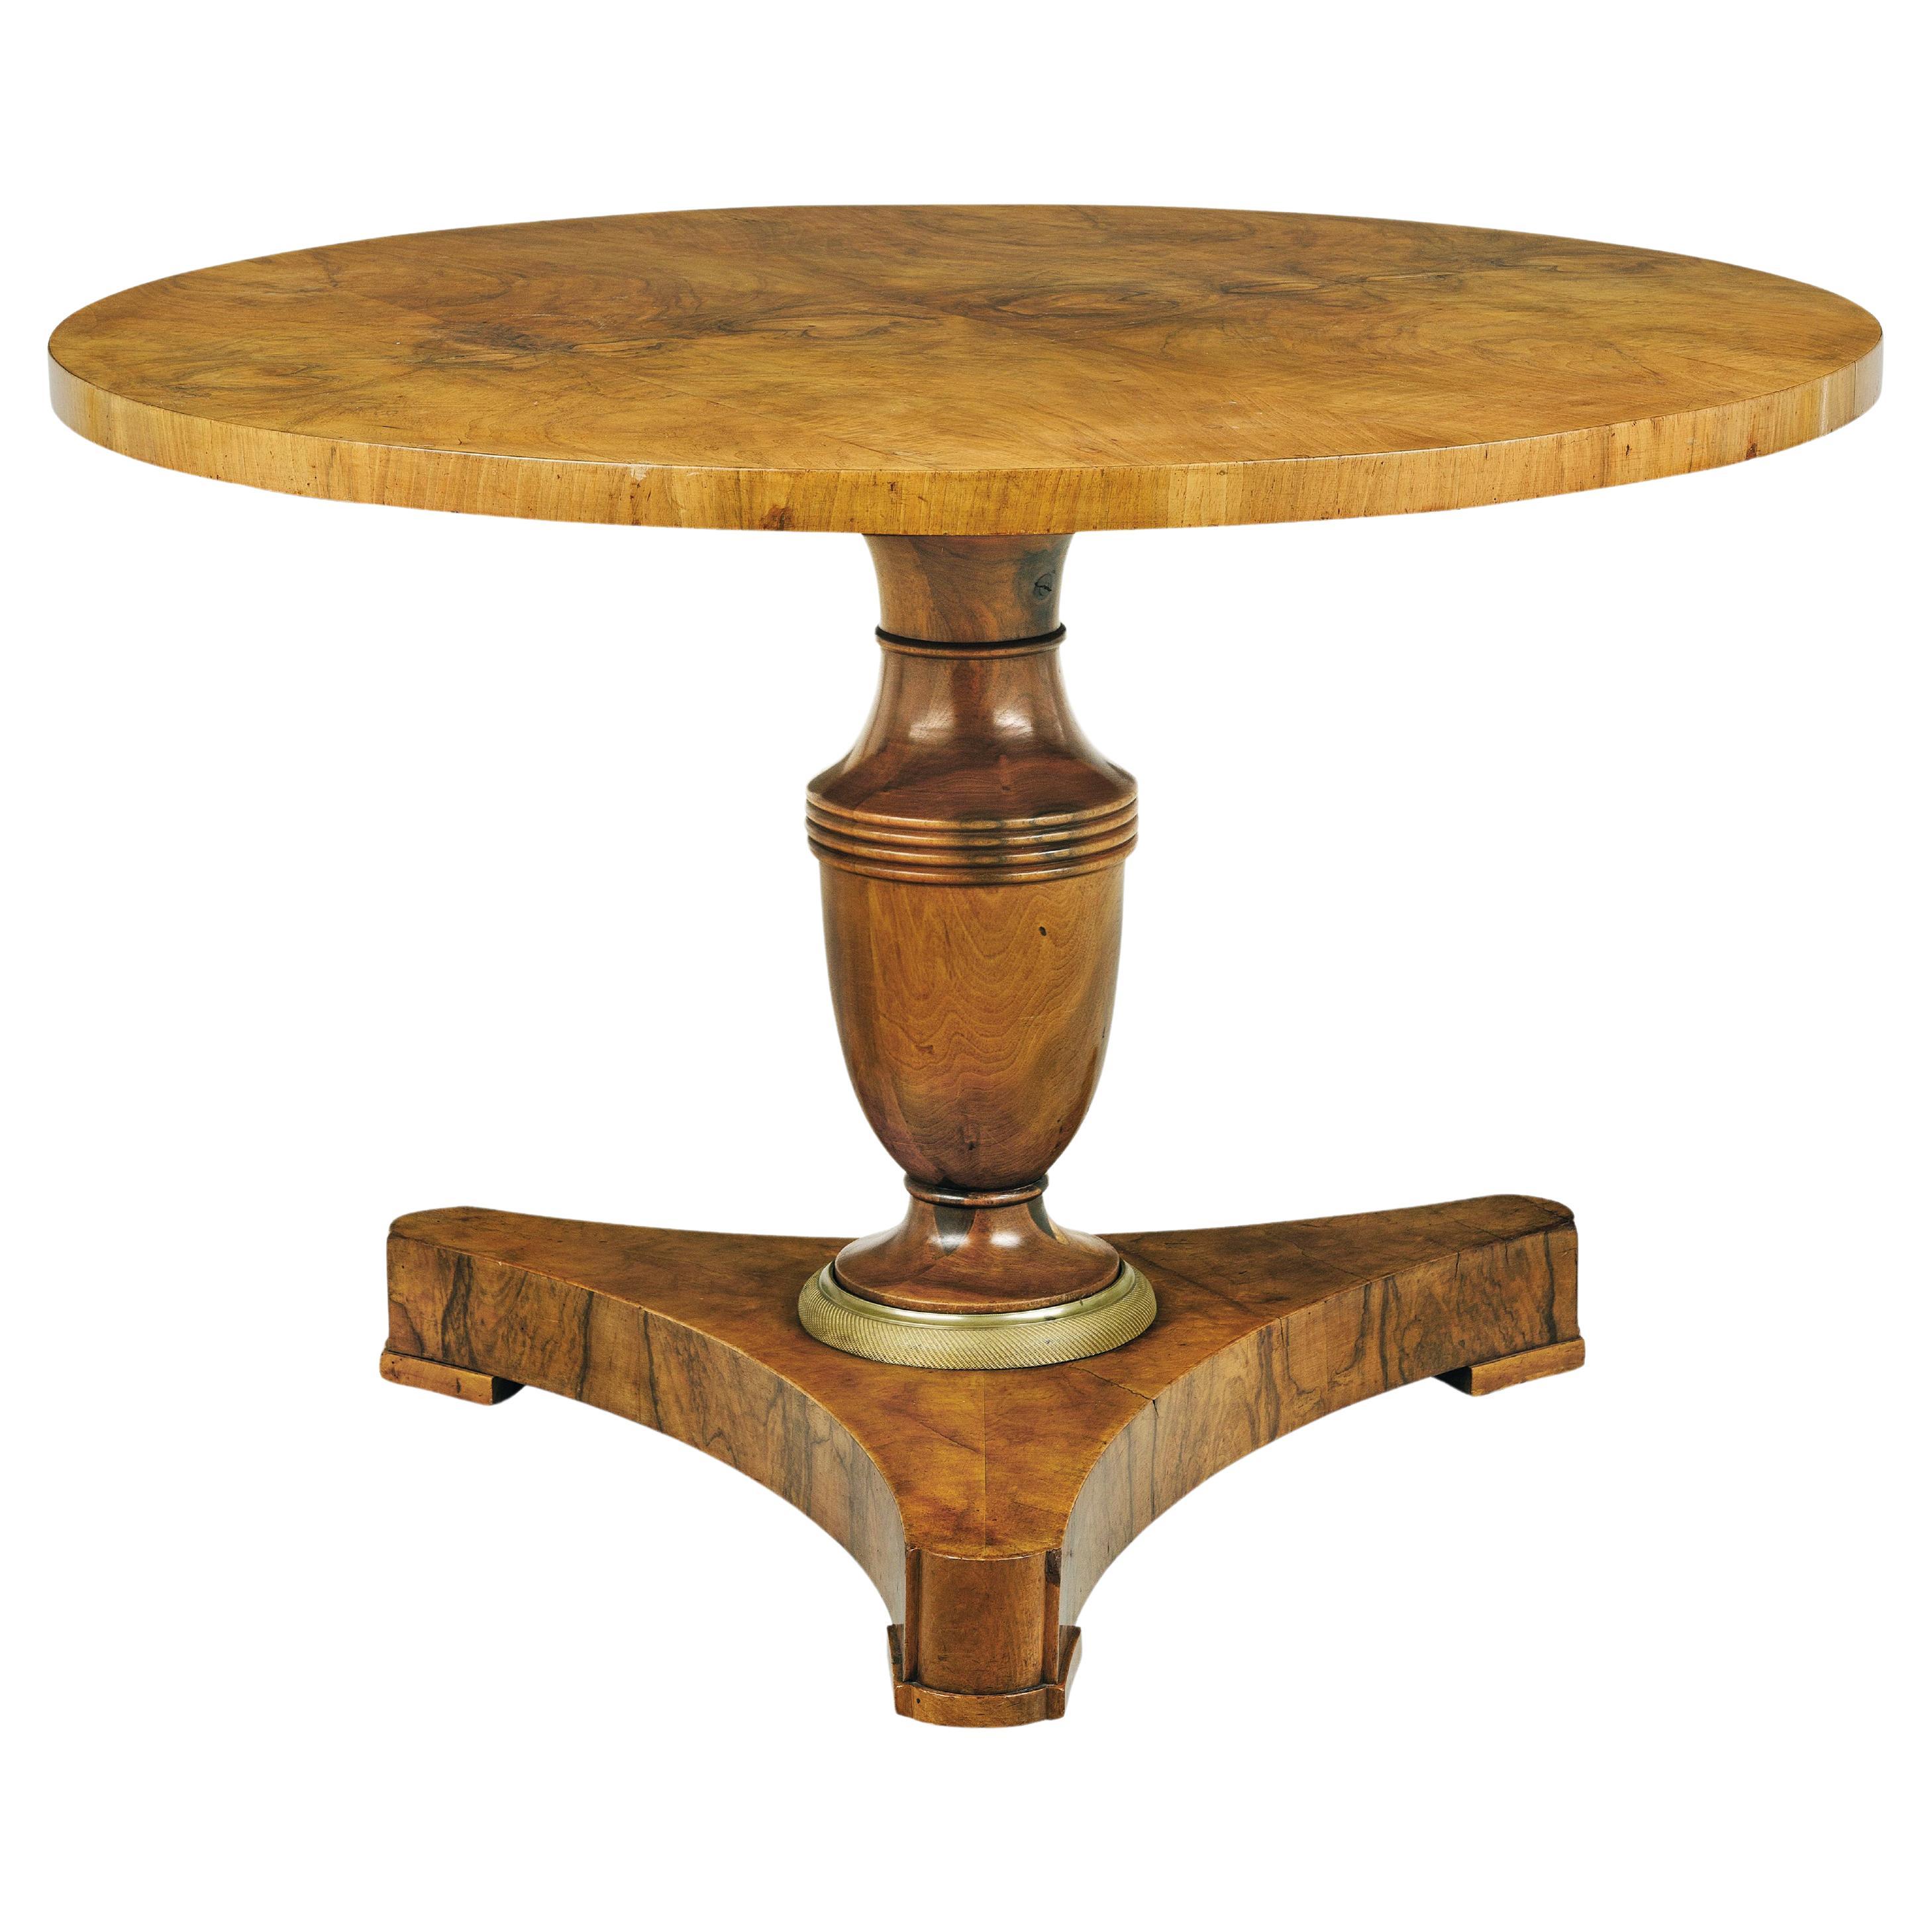 Biedermeier-Tisch aus Nussbaumholz aus dem 19. Jahrhundert. Wiener Stadt, um 1825.